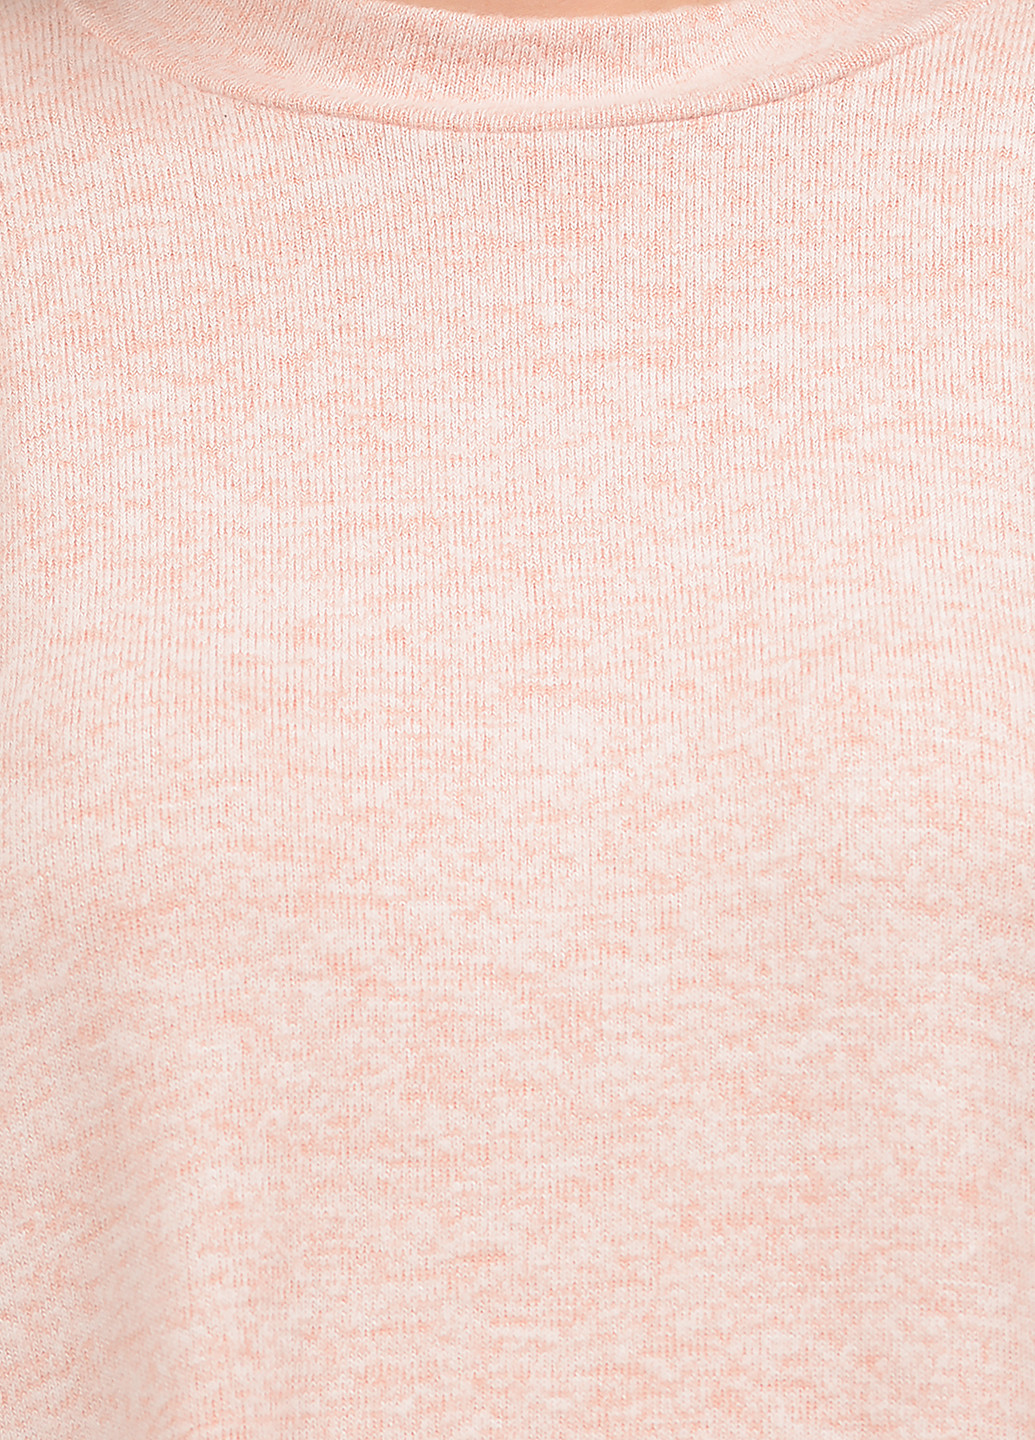 Светло-розовый демисезонный джемпер джемпер Tom Tailor